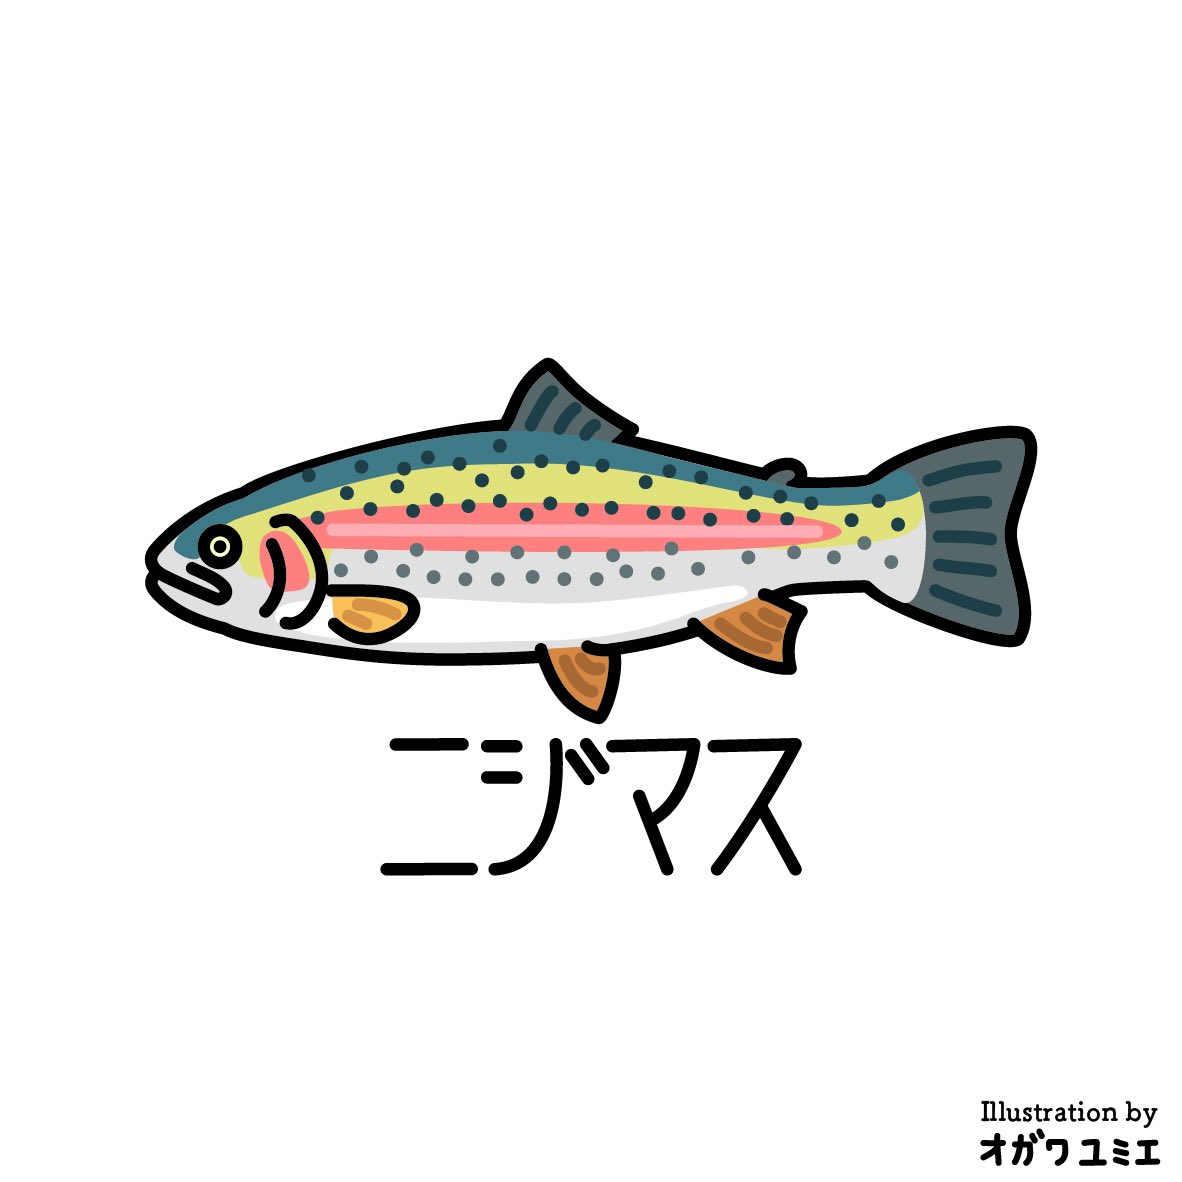 ニジマス

#yumieogawa #illustration #さかな #サカナ #魚 #fish #ニジマス #rainbowtrout